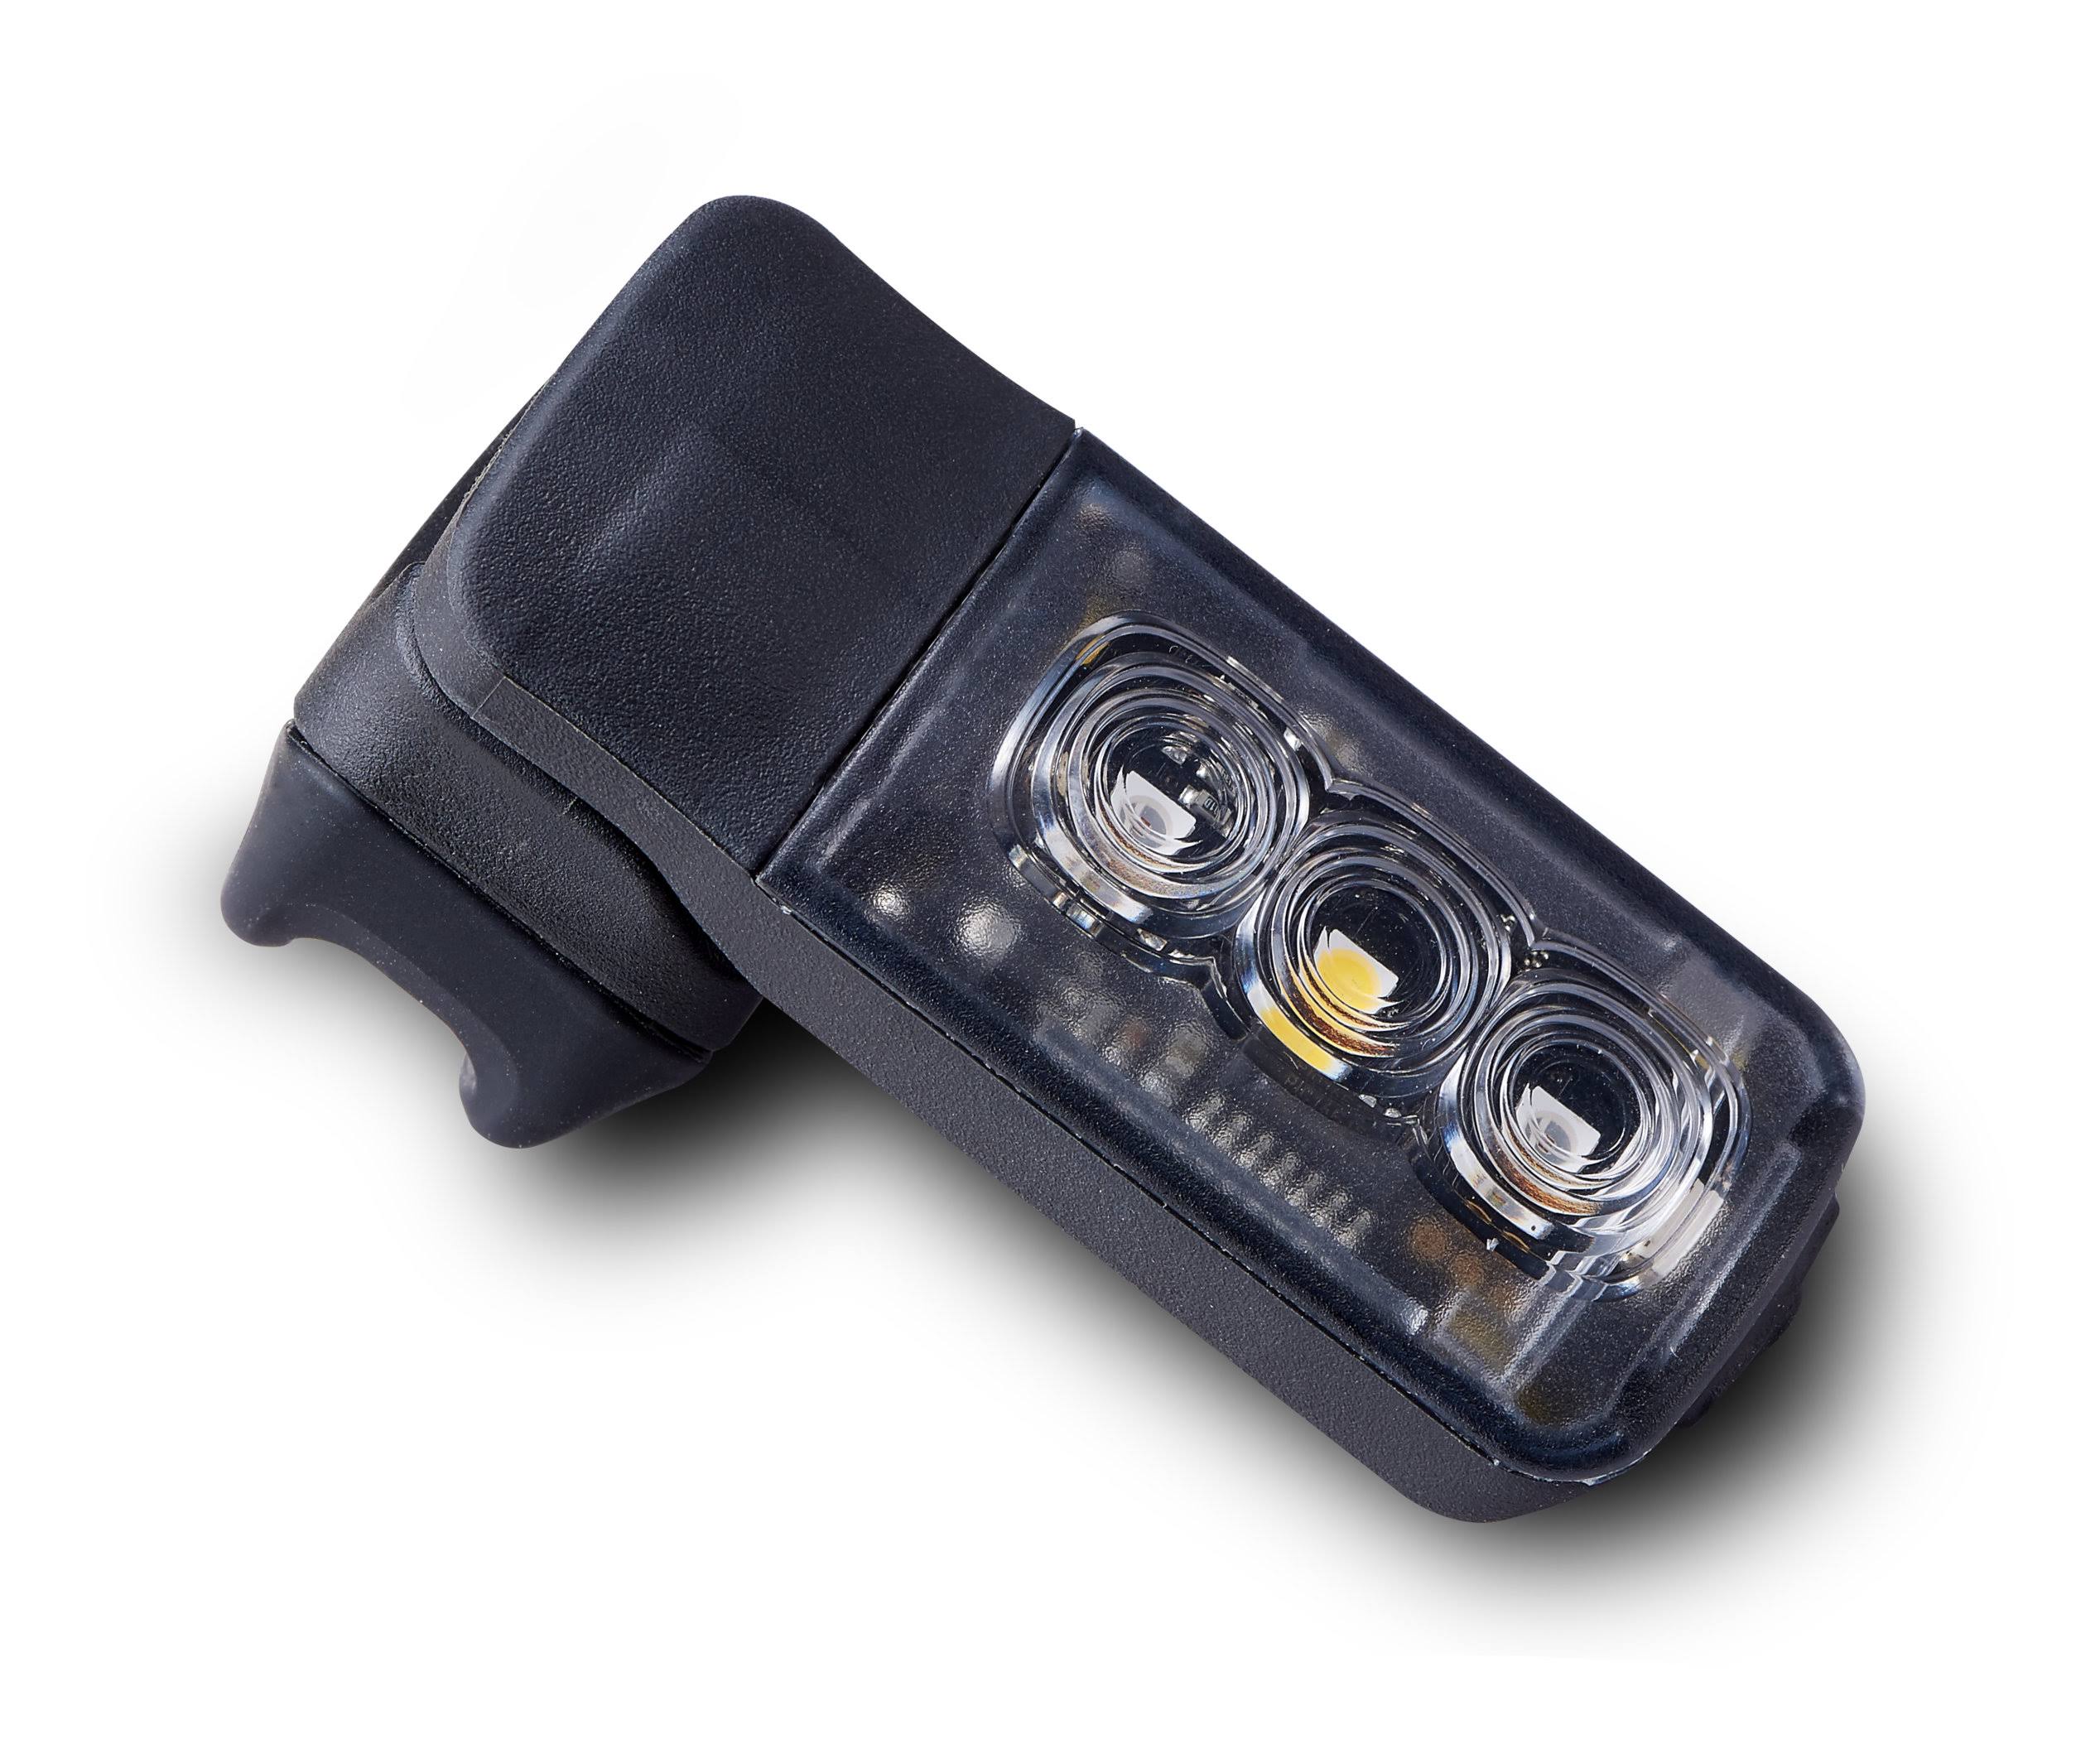 Specialized Stix Switch Headlight & Taillight